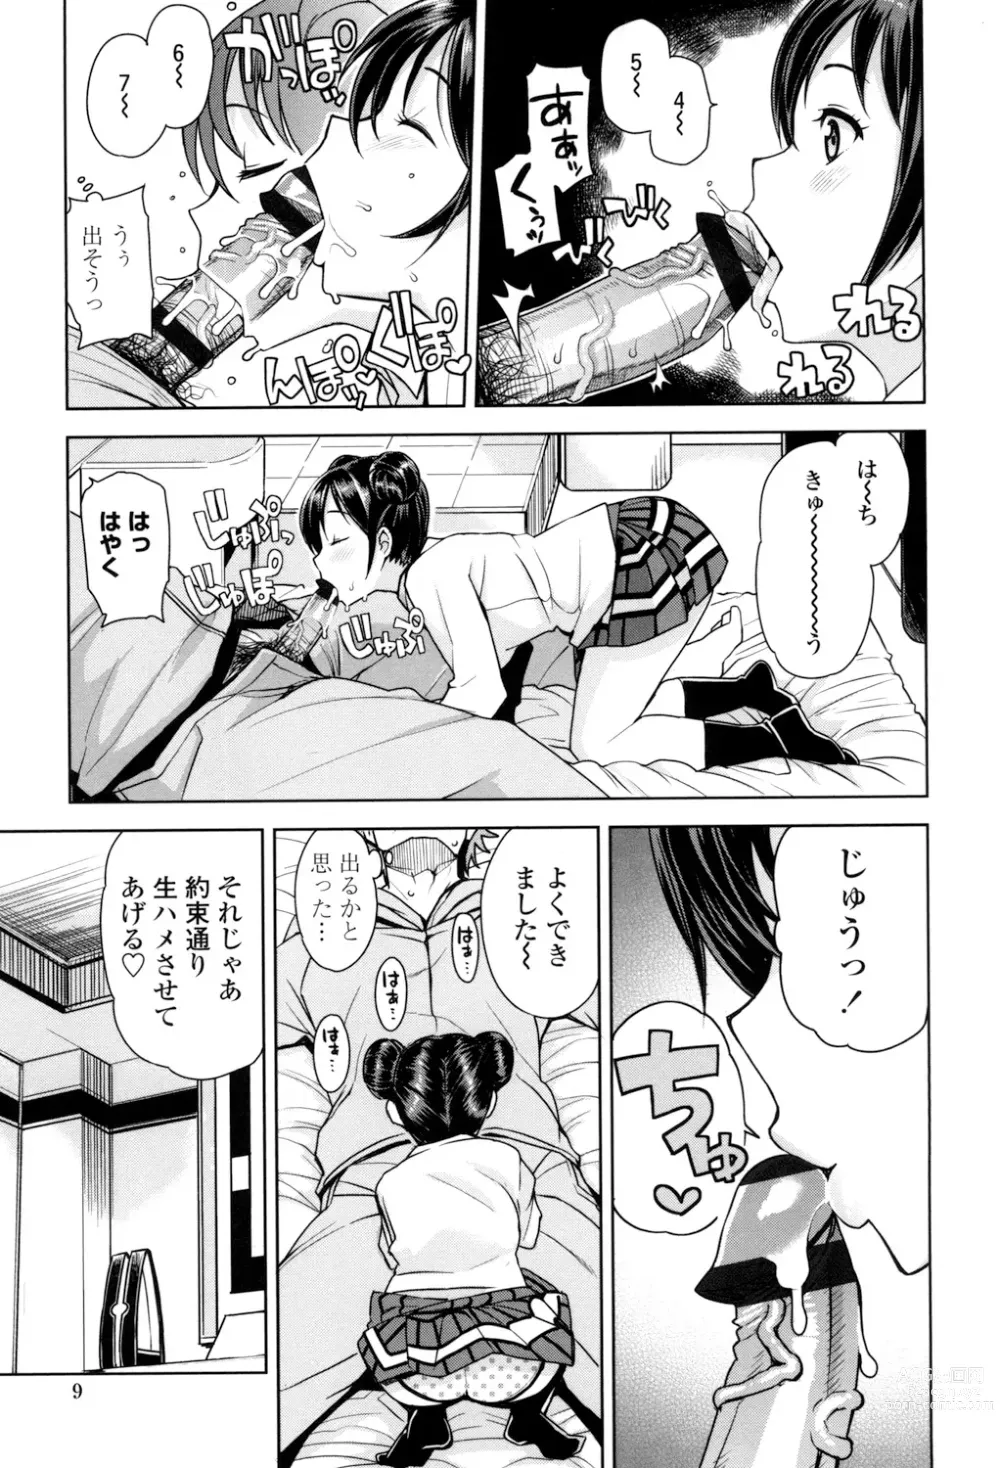 Page 10 of manga Doutei Danshi Kousei Iinkai - Virginity Boy Rebirth Committee